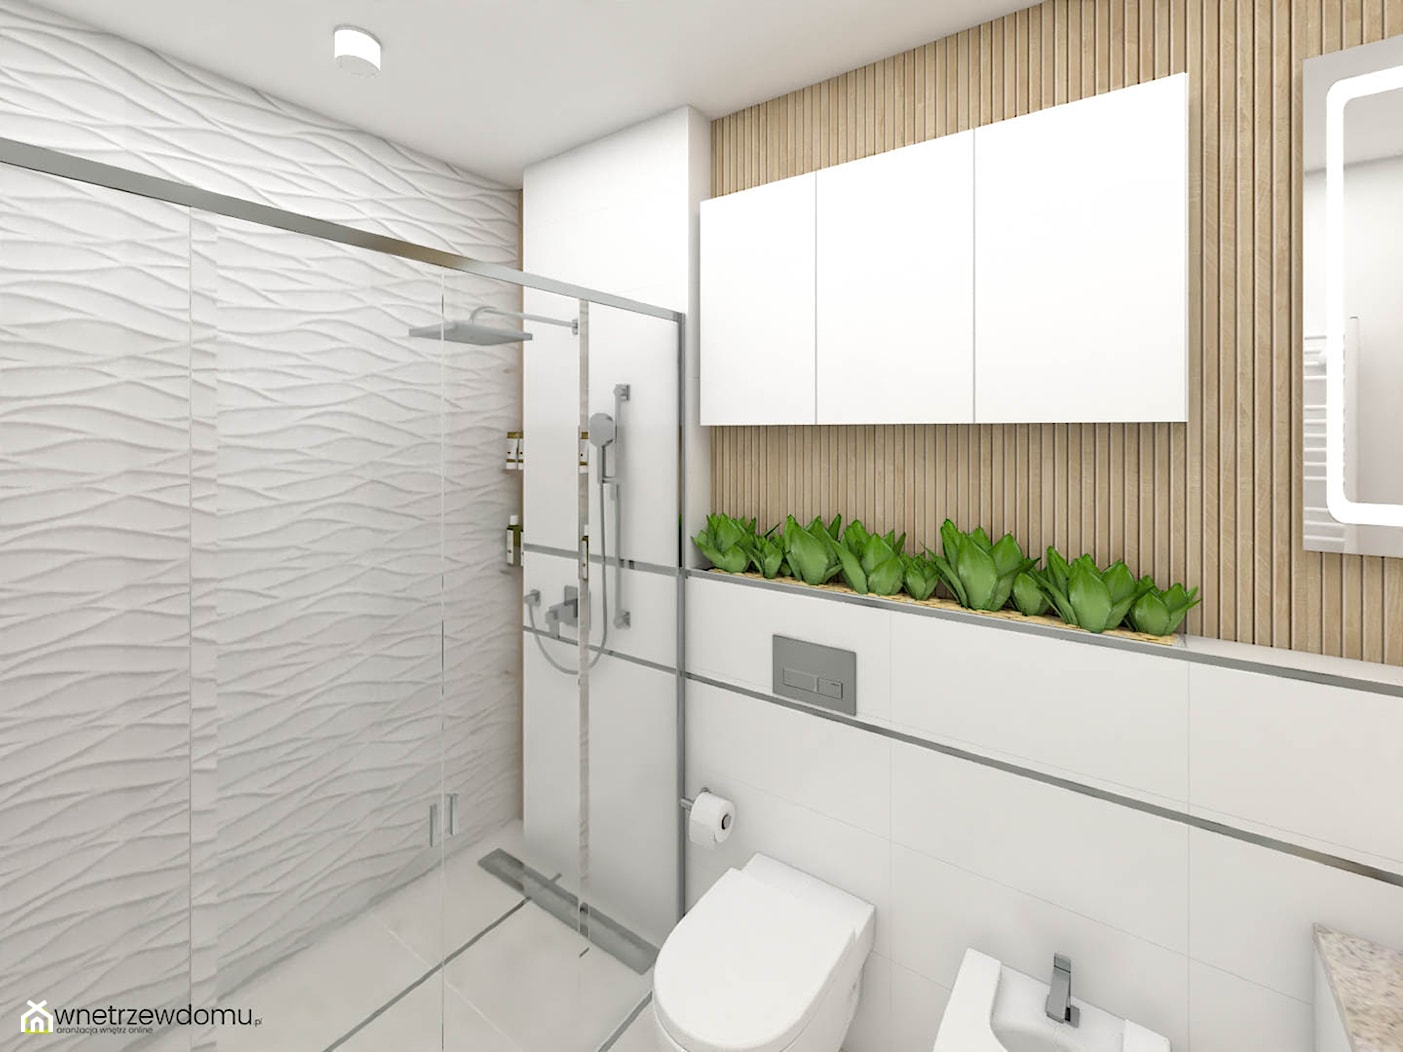 Strukturalne płytki w jasnej łazience - zdjęcie od wnetrzewdomu - Homebook